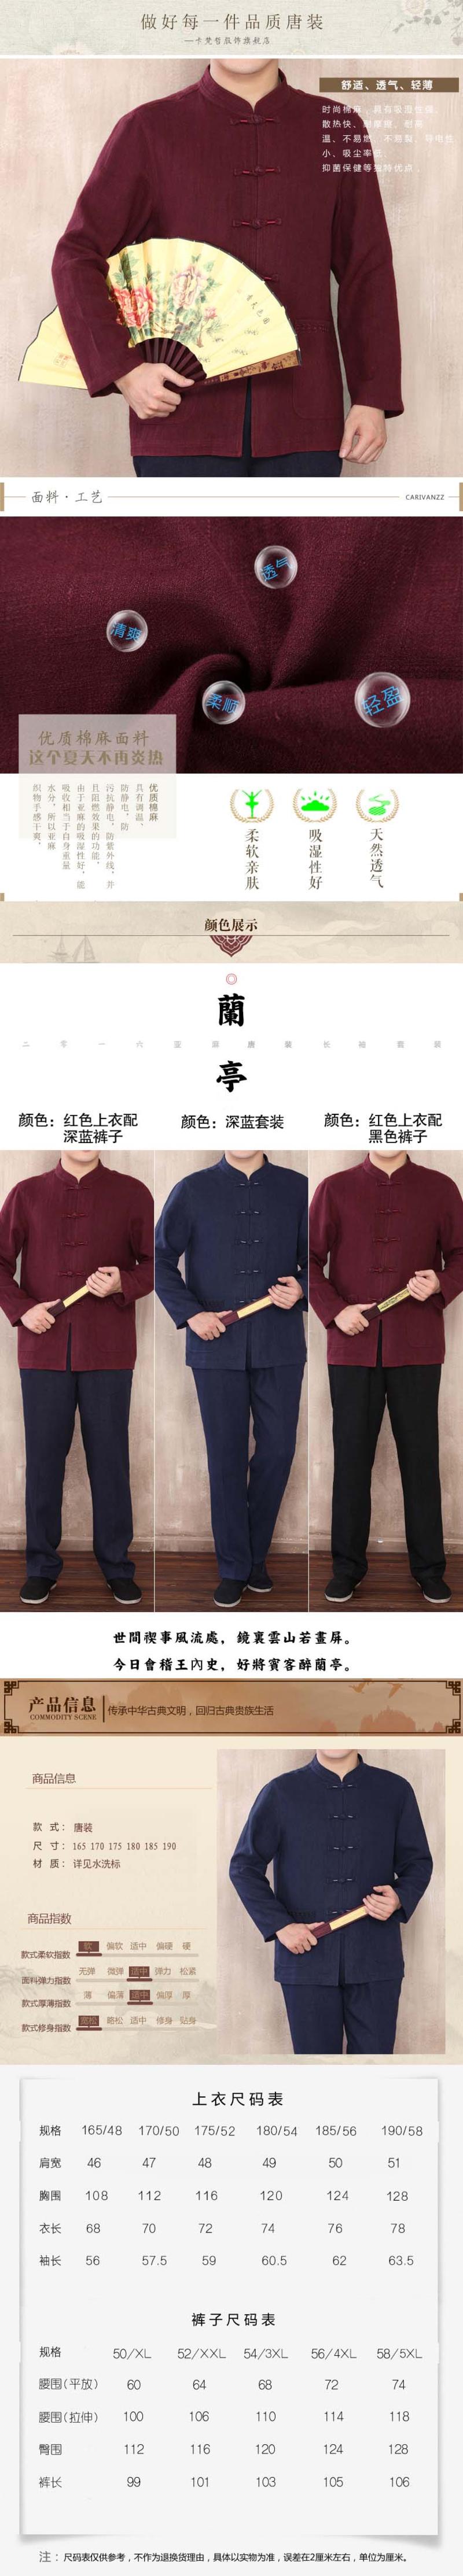 汤河之家 秋新款中老年男装亚麻长袖唐装男套装中国风民族服装爸爸装 682